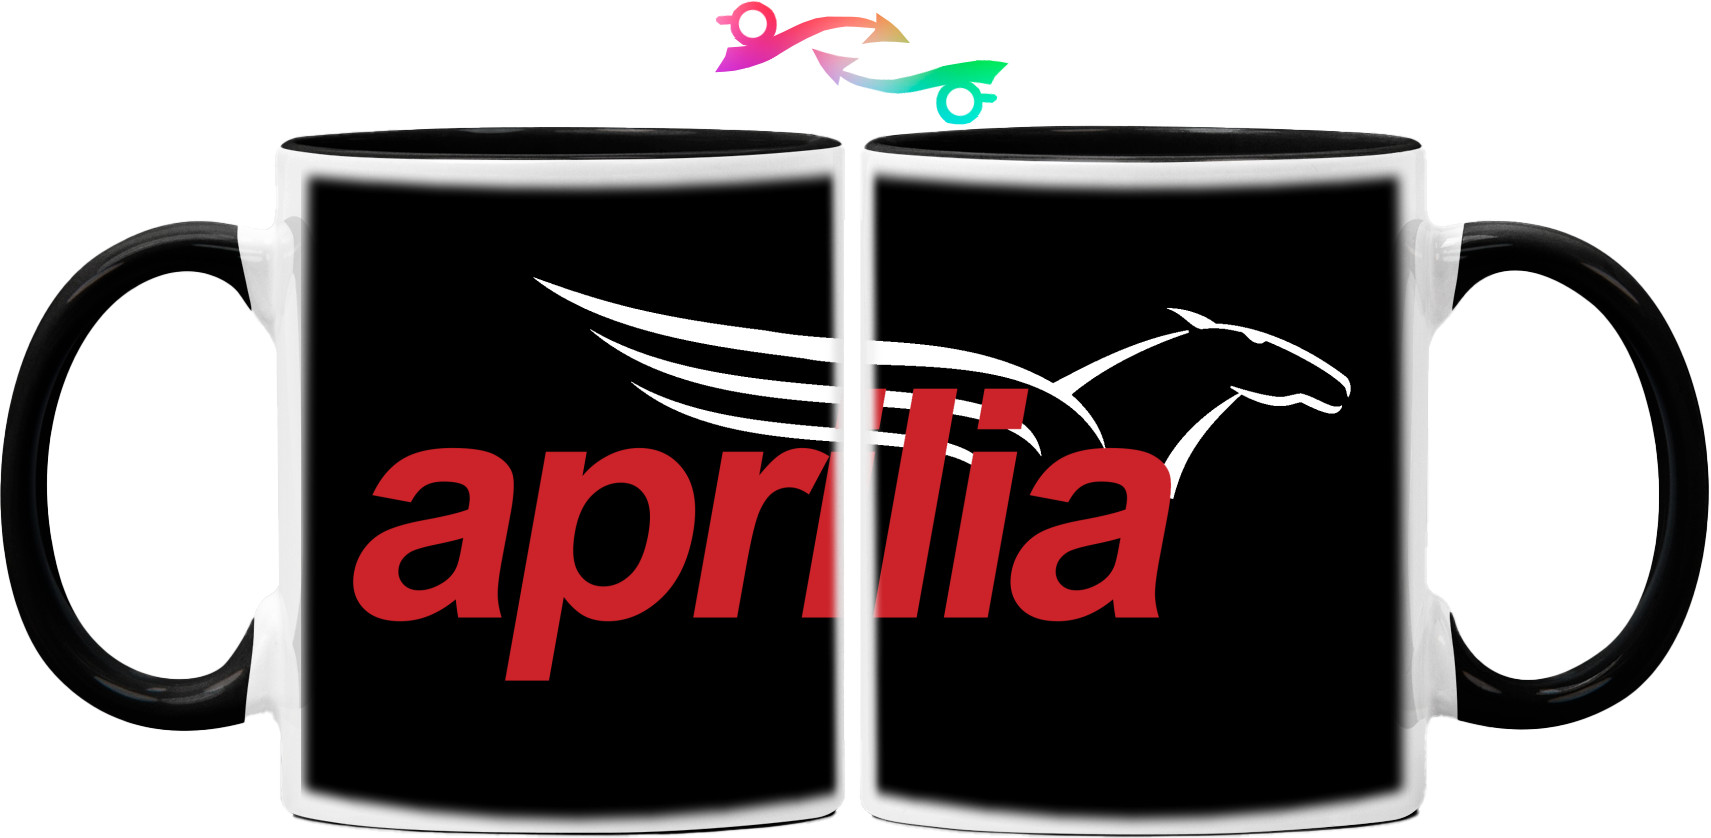 Aprilia Logo